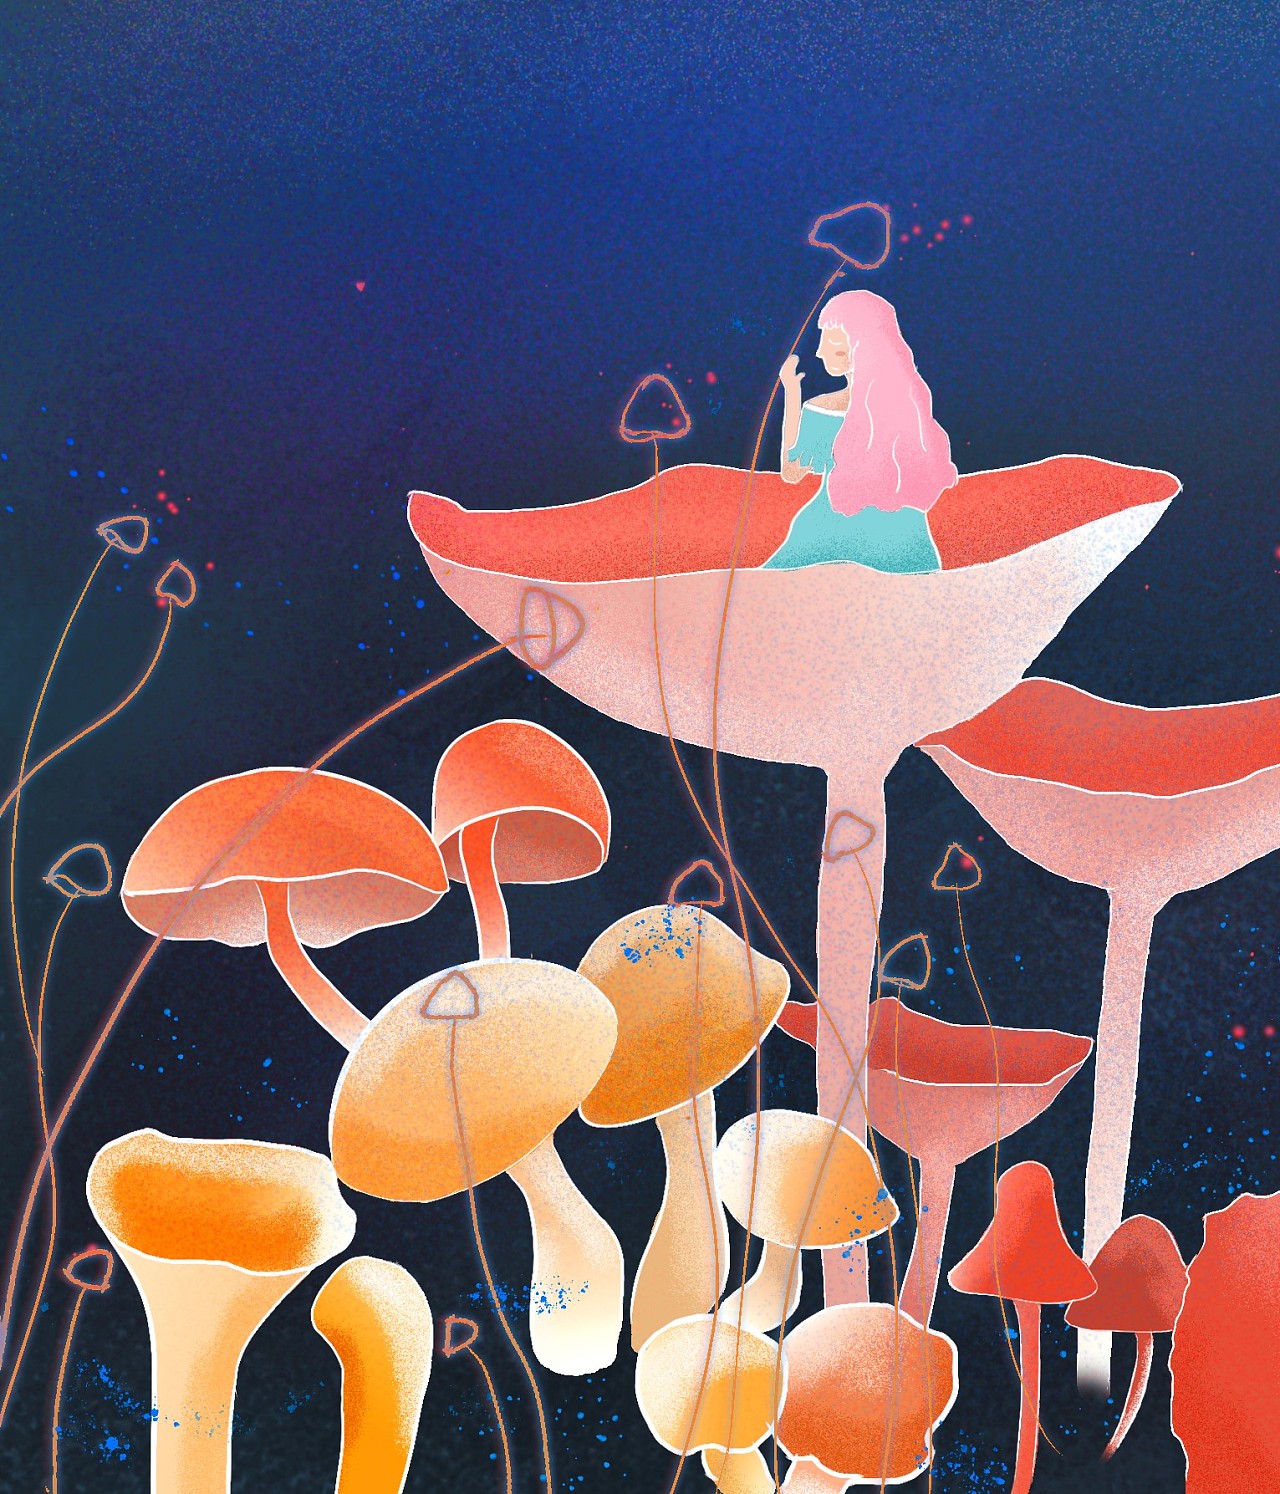 美丽的蘑菇 库存例证. 插画 包括有 图画, 设计, 附庸风雅, 蘑菇, 下落, 背包, 灌木, 例证, 绘画 - 2226345